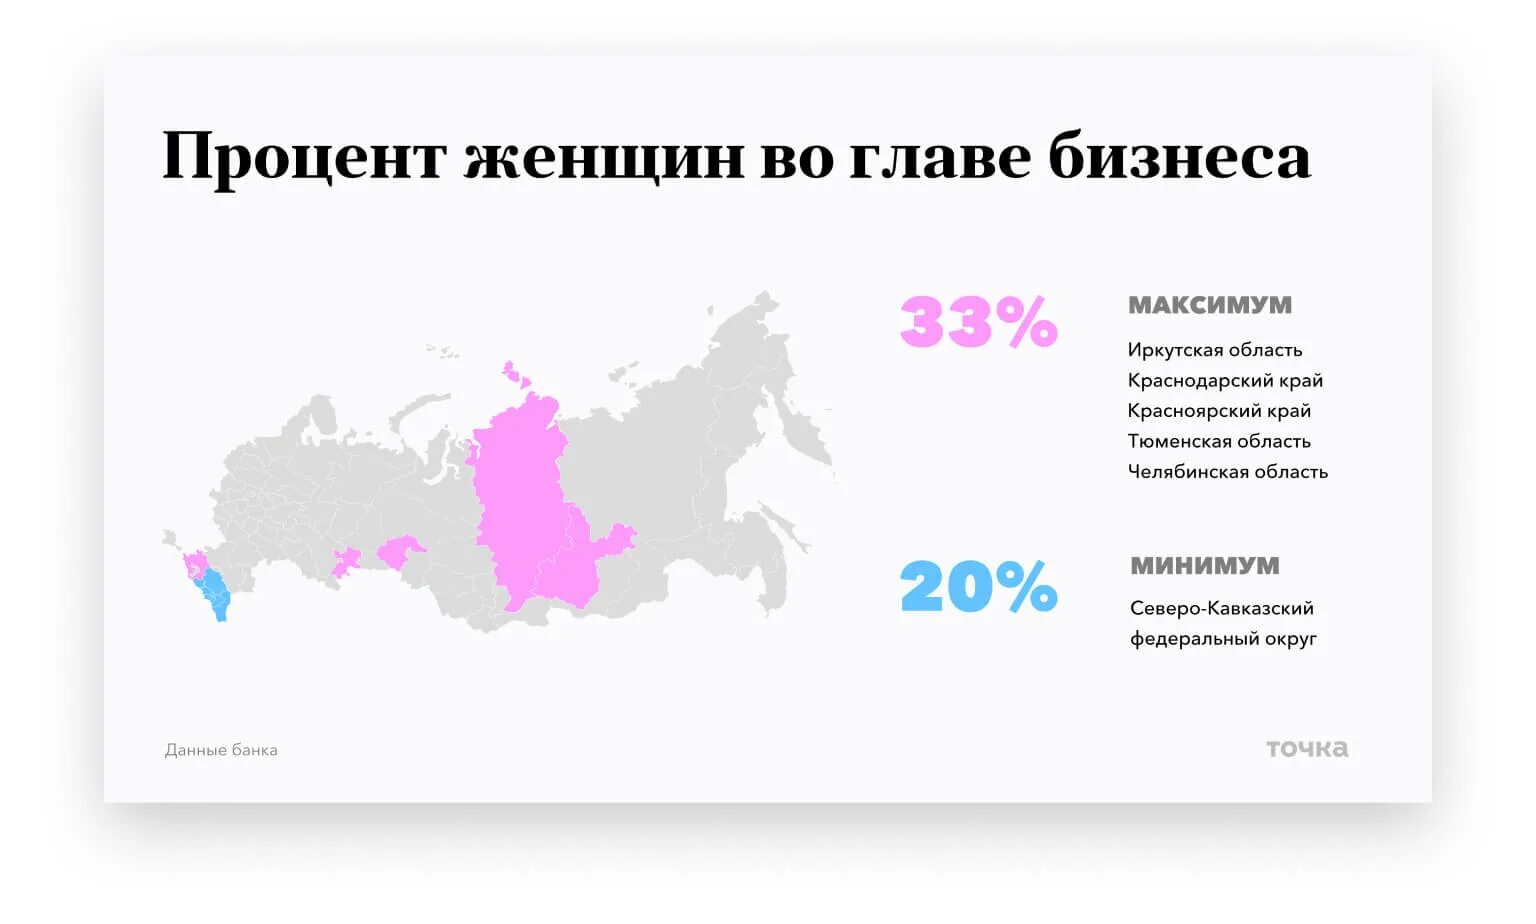 Какой процент предыдущим выборам. Процент женщин в России. Процент женщин в политике в России. Процент мужчин и женщин в России 2020. Процент женщин владельцев бизнеса в России.